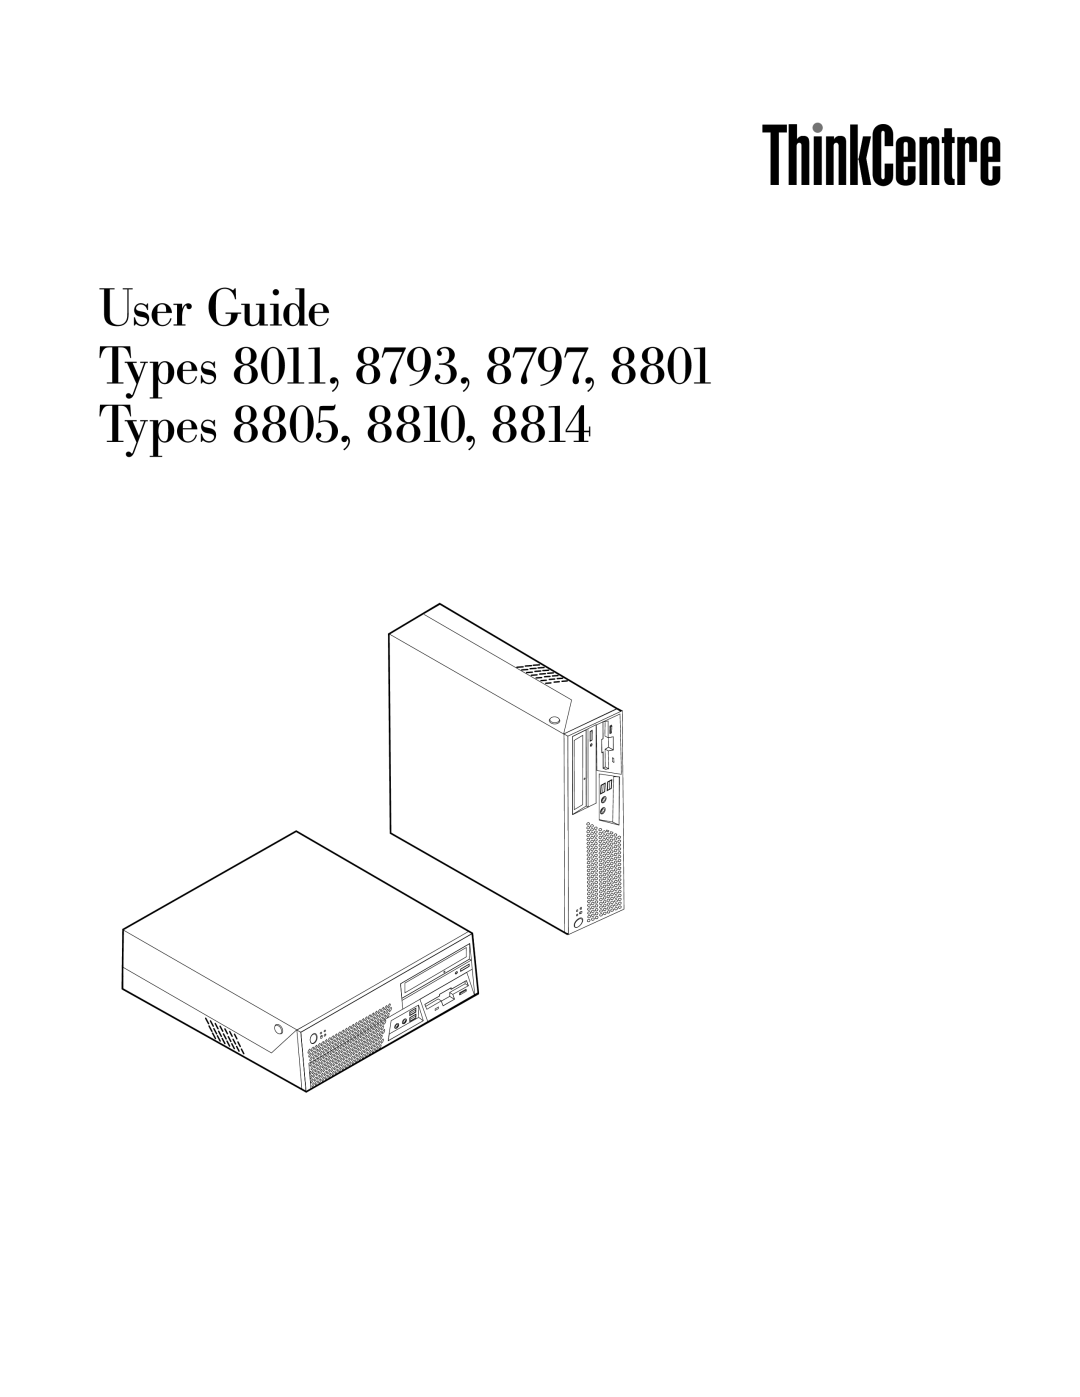 Lenovo 8810, 8814, 8801, 8793, 8805, 8797, 8011 manual User Guide Types 